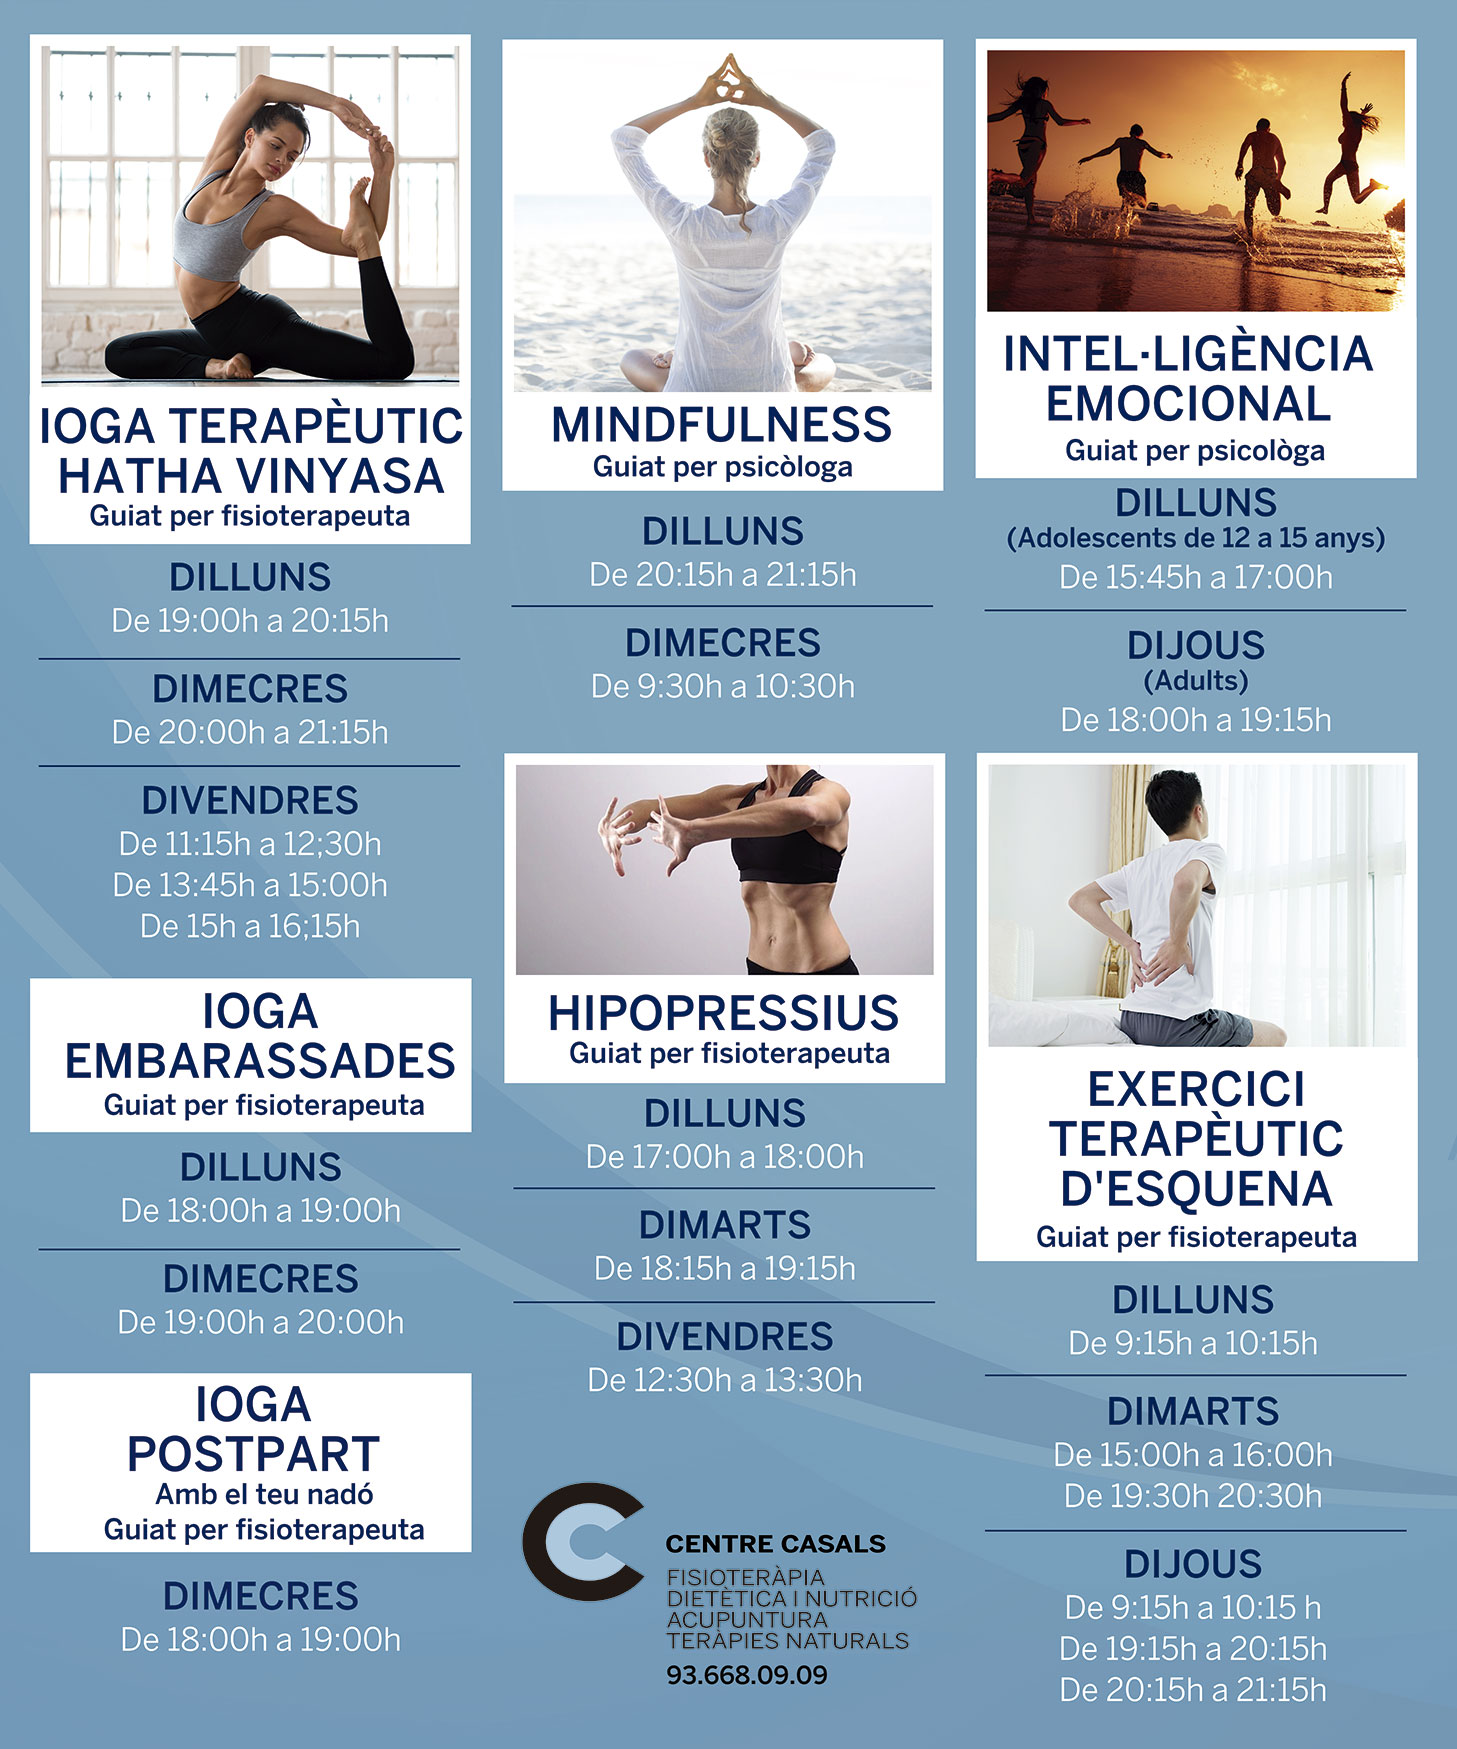 Material necesario para practicar Yoga y Yoga Terapéutico